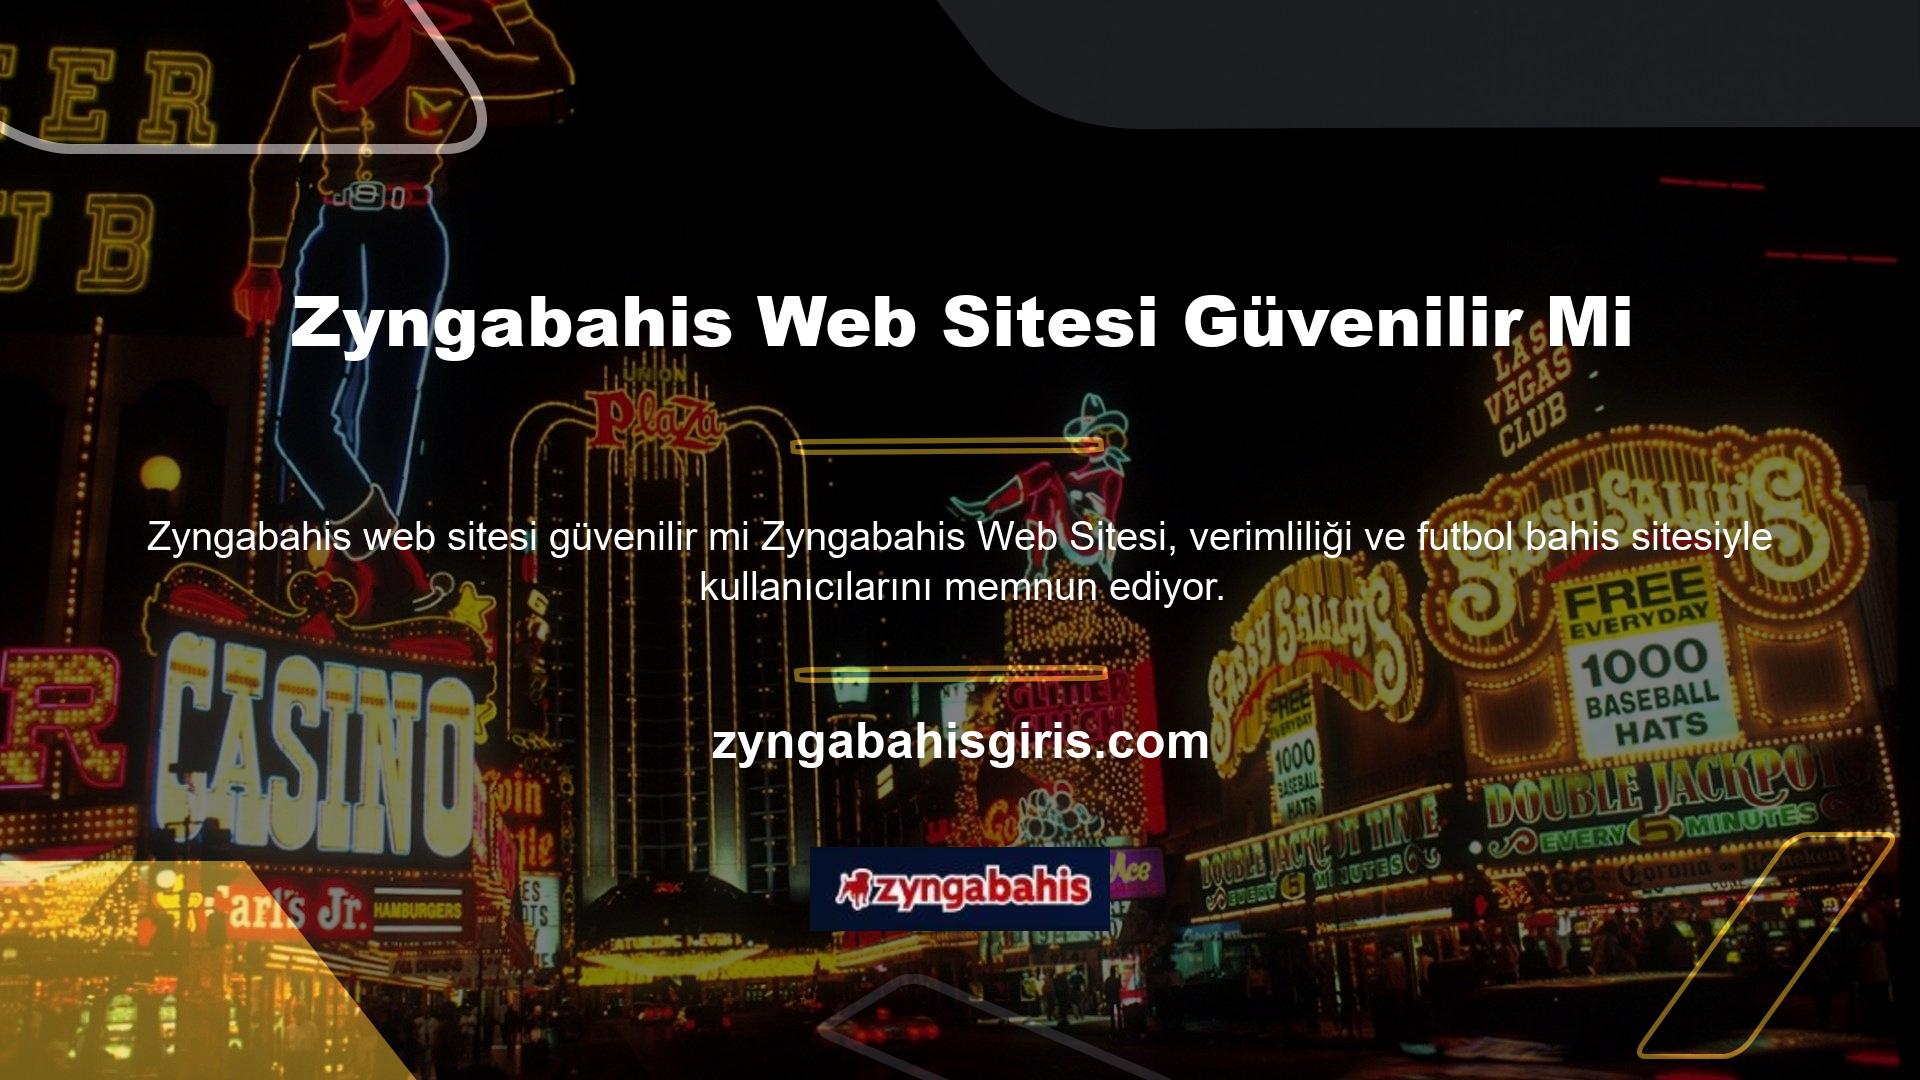 Zyngabahis bahis sitesi geniş bir oyun yelpazesi sunmaktadır